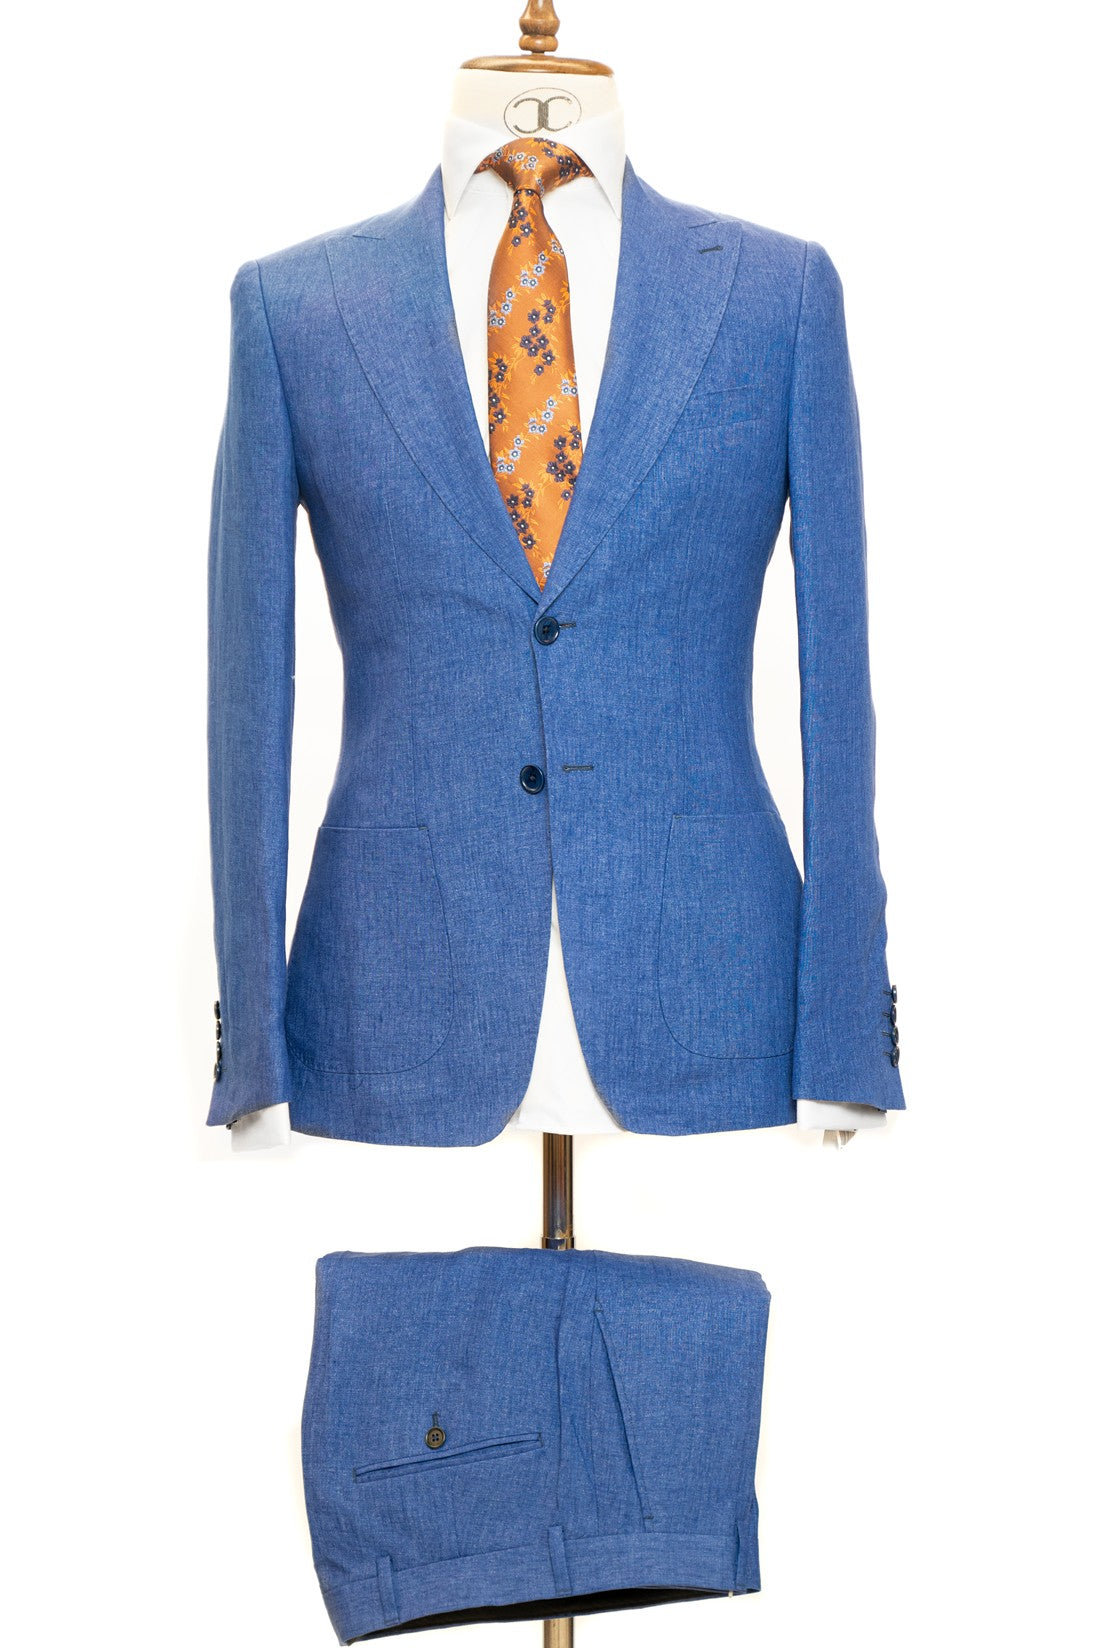 Connaisseur Paris - Light Blue 2 Piece Slim Fit Linen Suit with Patch Pockets